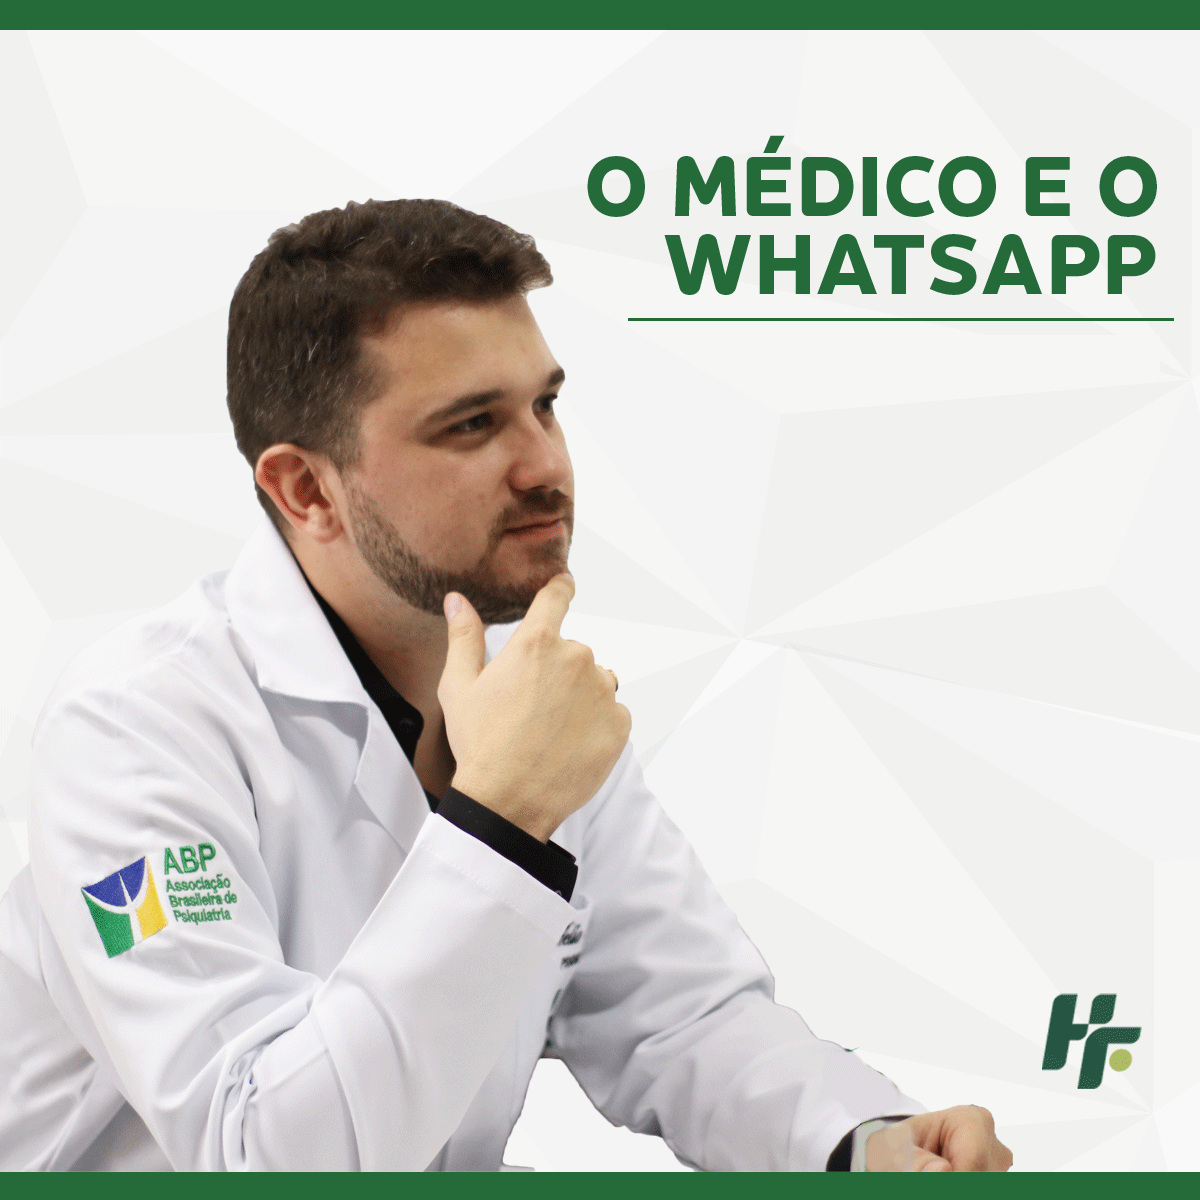 Médico e o whatsapp 1 - Posso mandar WhatsApp para o meu médico?